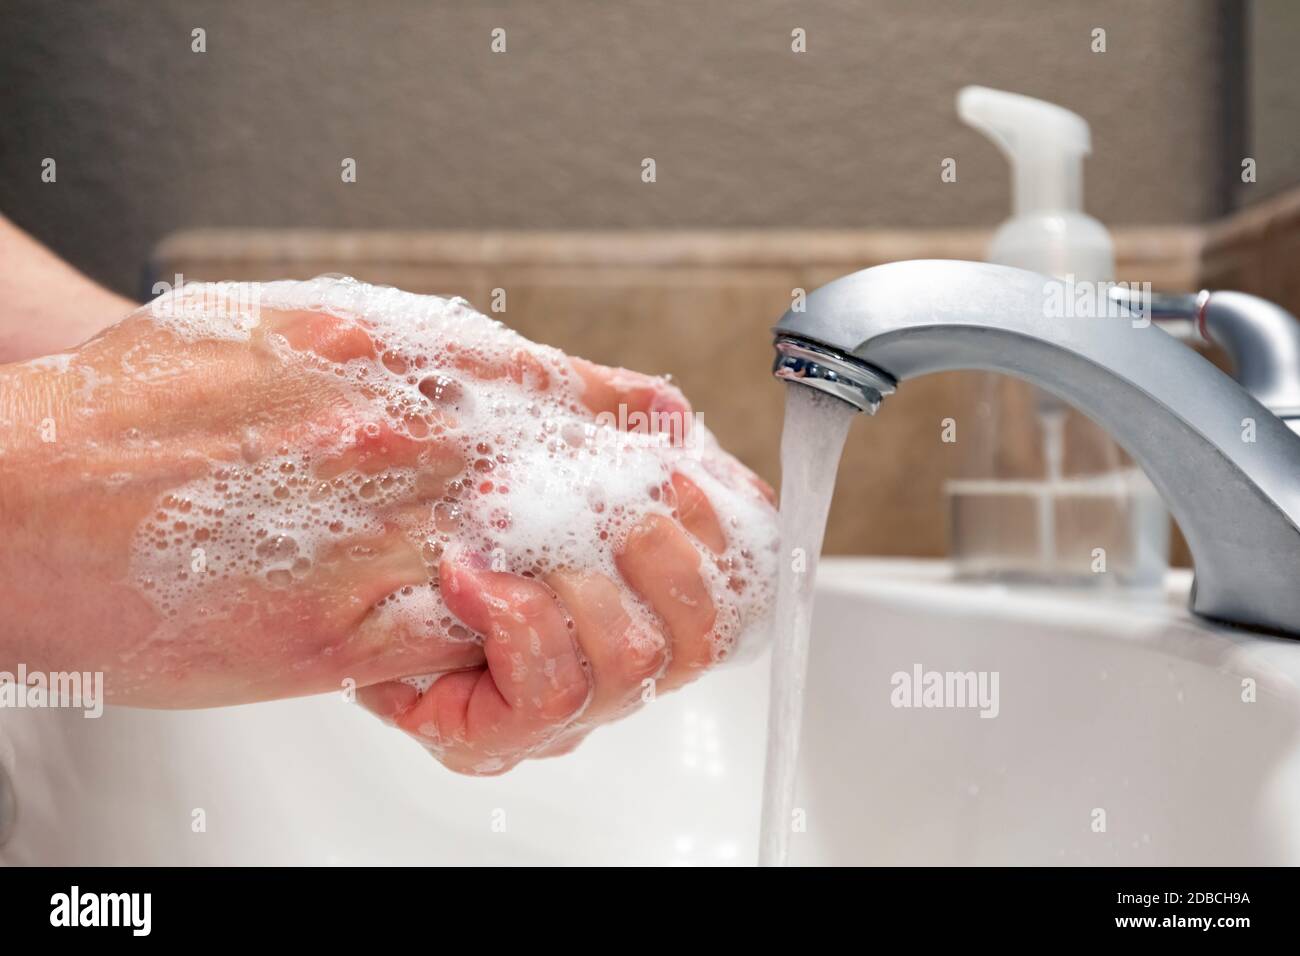 Lavando le mani con sapone e acqua nel lavello del bagno, protezione contro virus e batteri, igiene per rimanere in buona salute Foto Stock